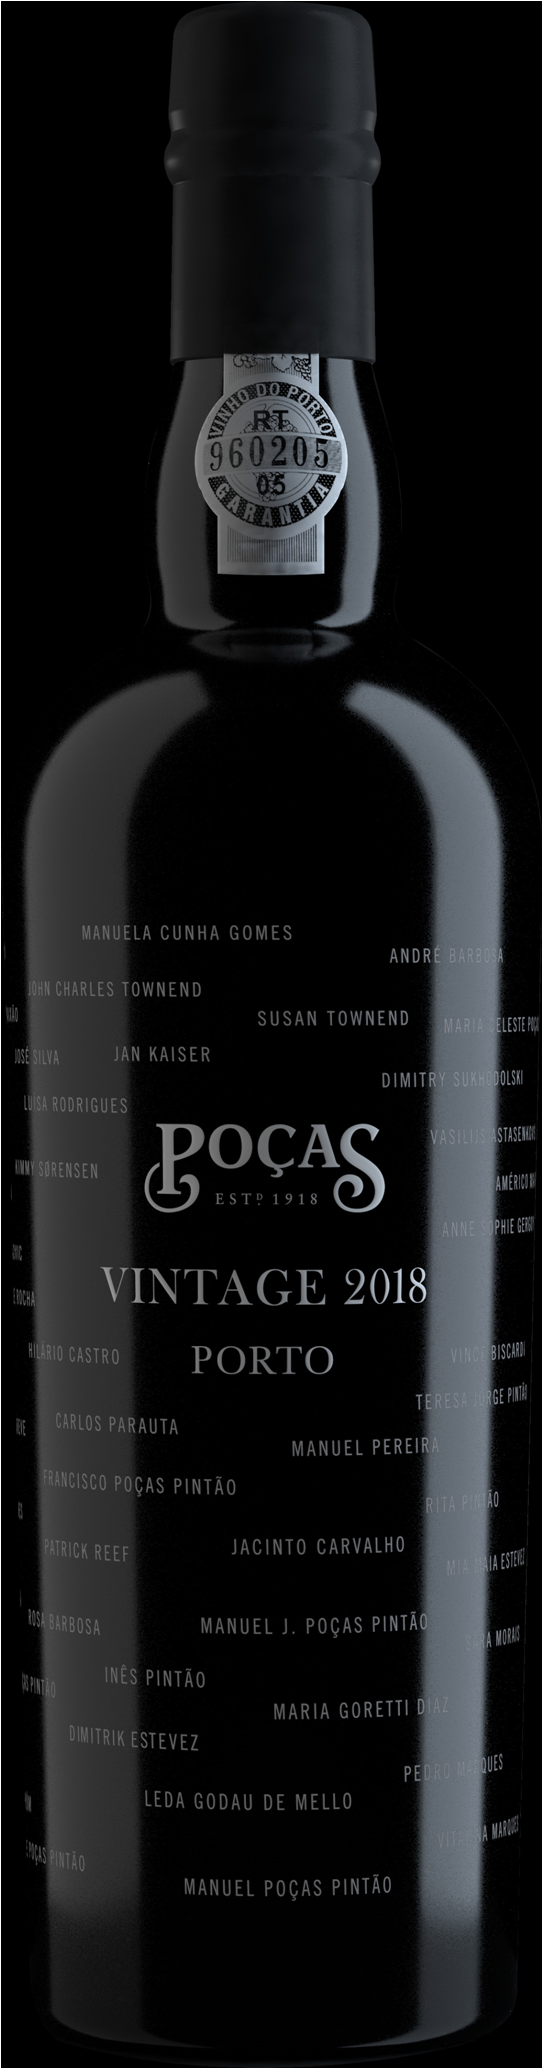 Pocas Vintage 2018 Special Edition